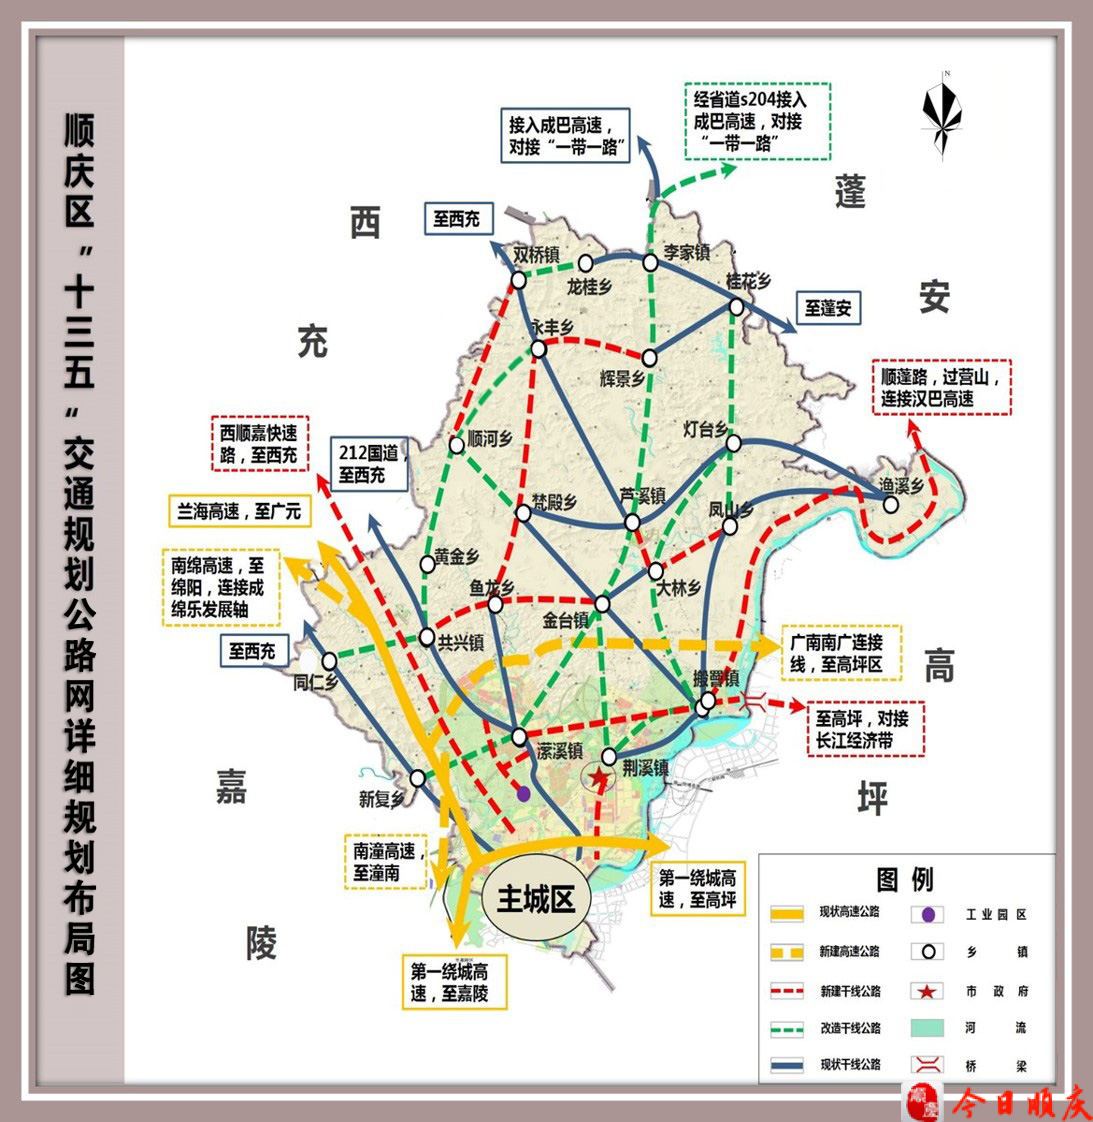 顺庆区交通运输局供图顺庆区交通运输局供图1995年,该区投资1400余万